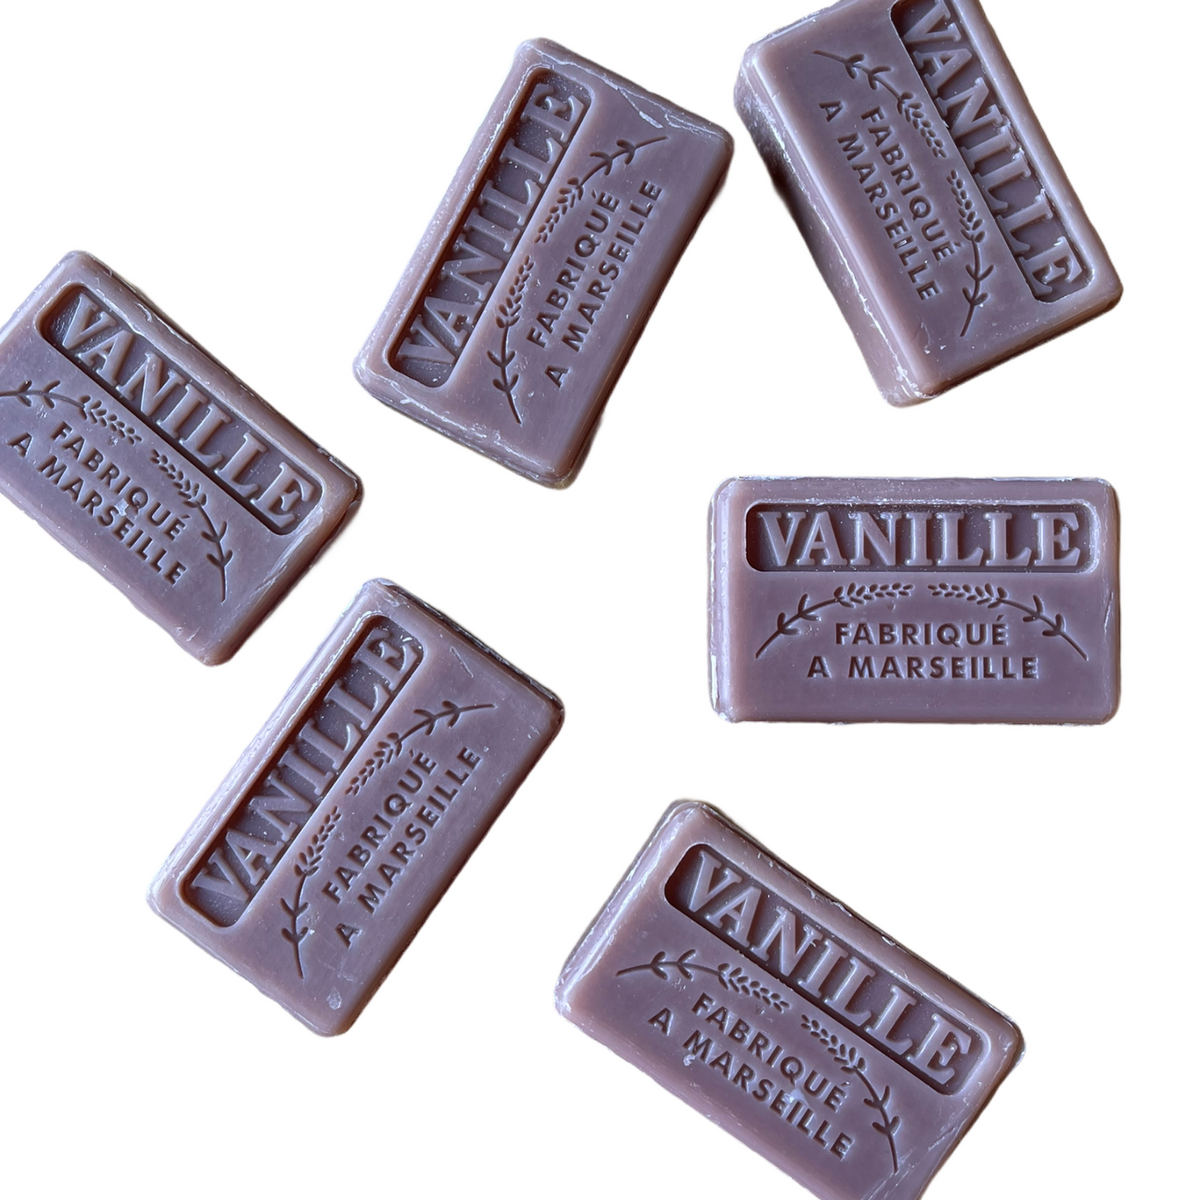 Vanilla guest soap